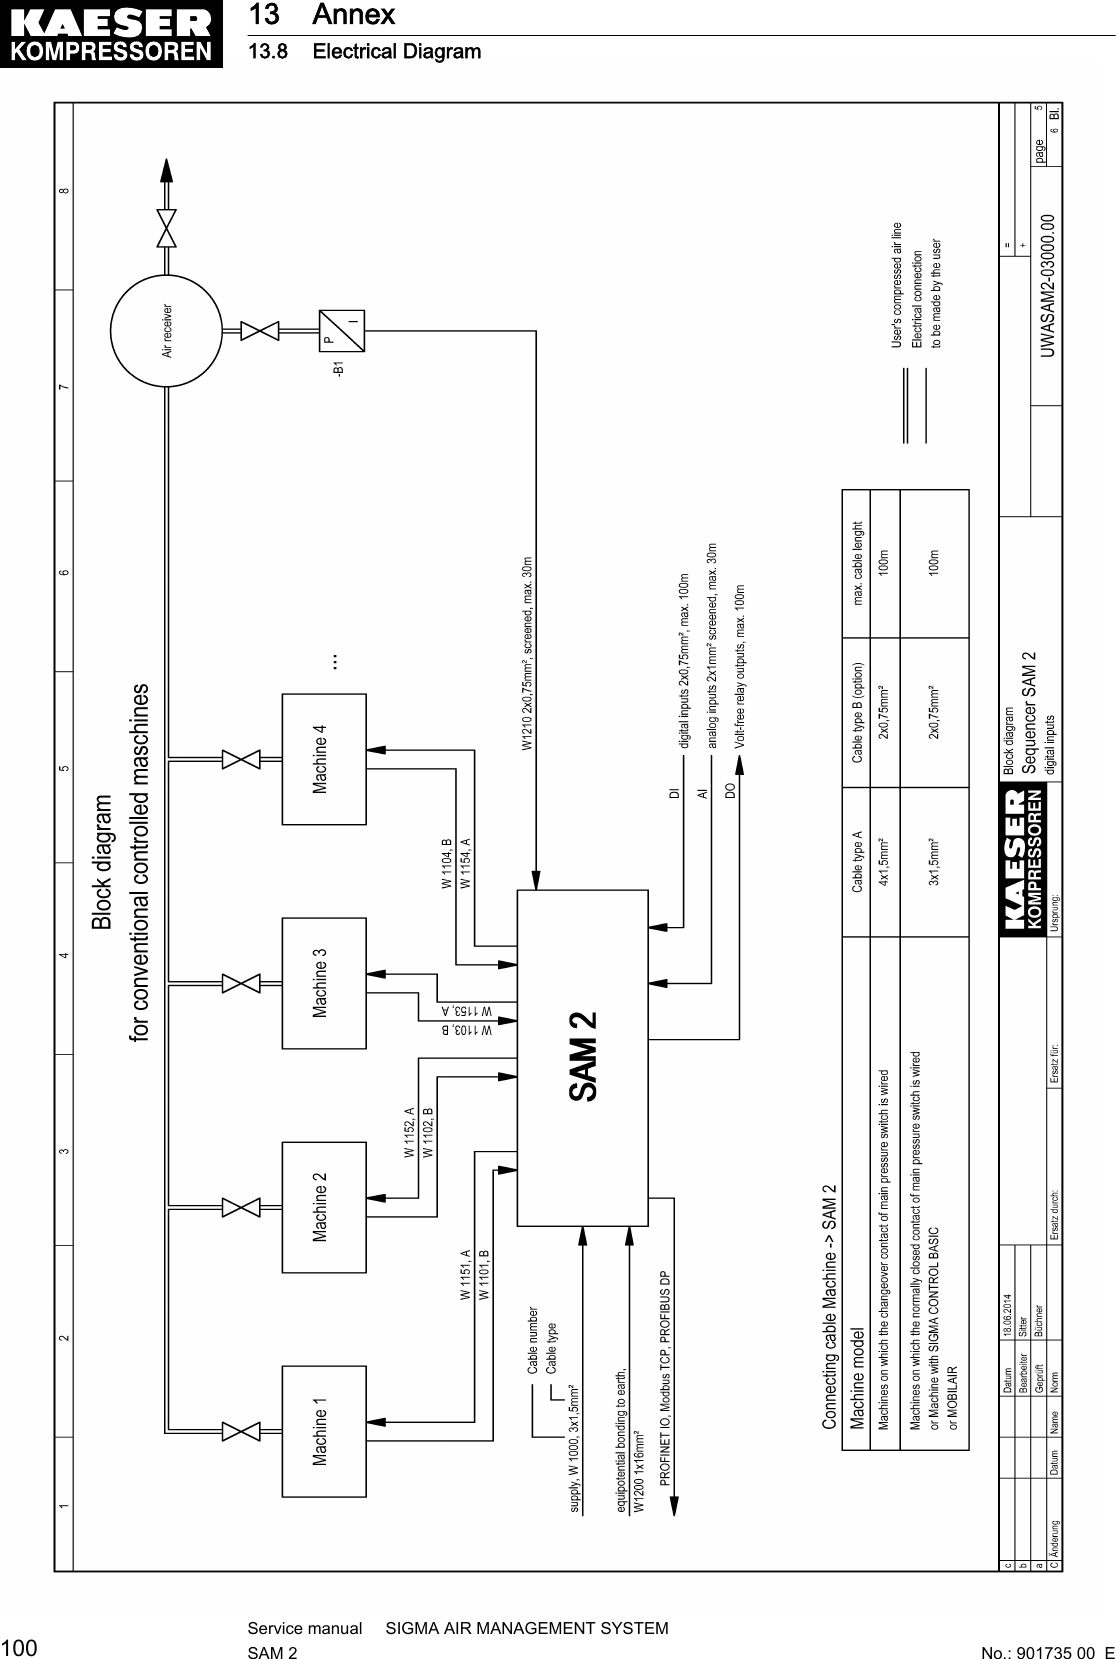 13 Annex13.8 Electrical Diagram100Service manual     SIGMA AIR MANAGEMENT SYSTEMSAM 2  No.: 901735 00  E